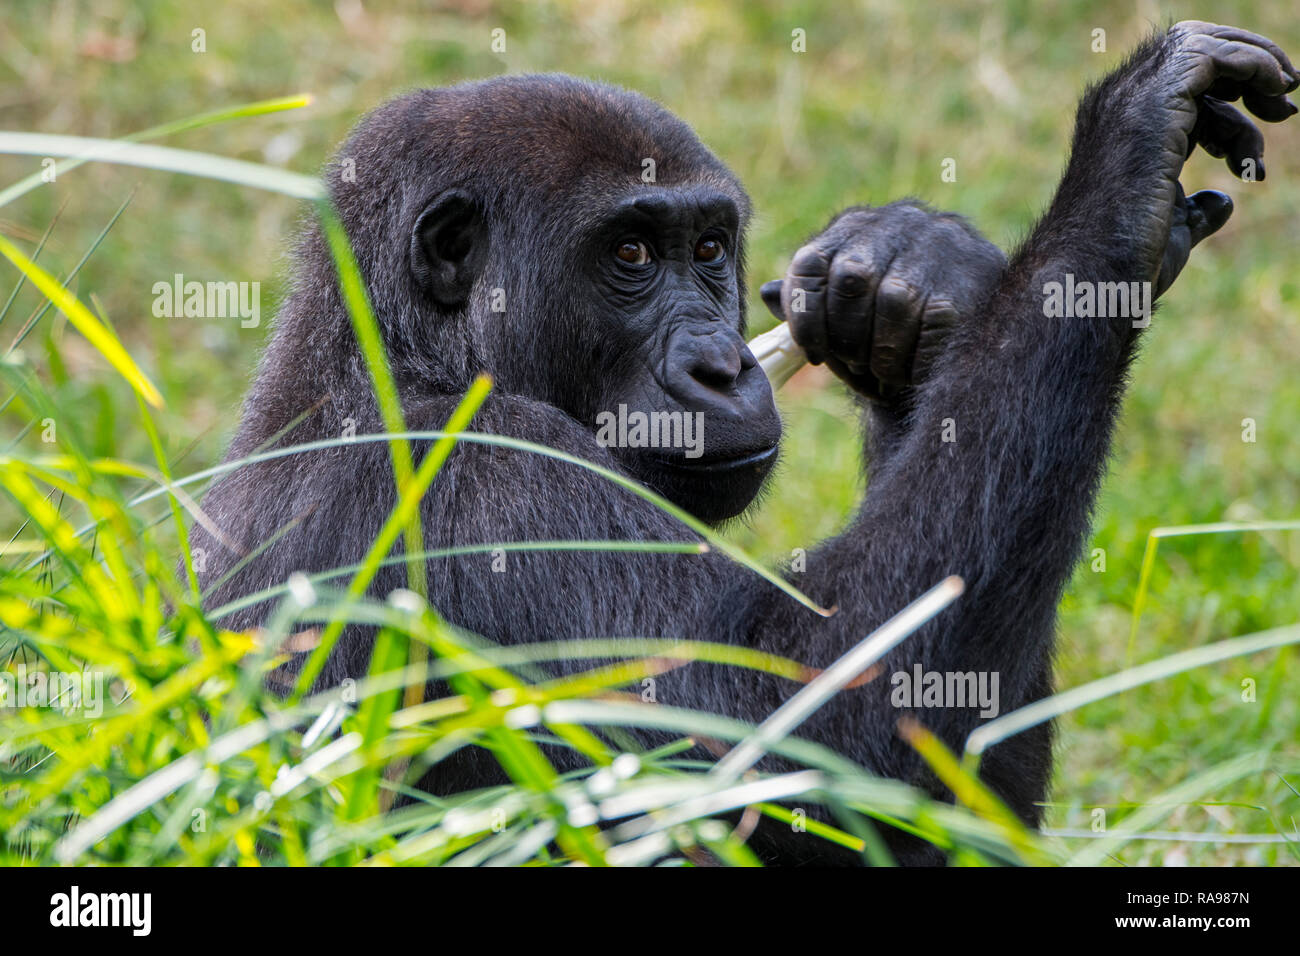 Close up portrait of young gorille de plaine de l'ouest (Gorilla gorilla gorilla) indigènes de l'Afrique centrale Banque D'Images